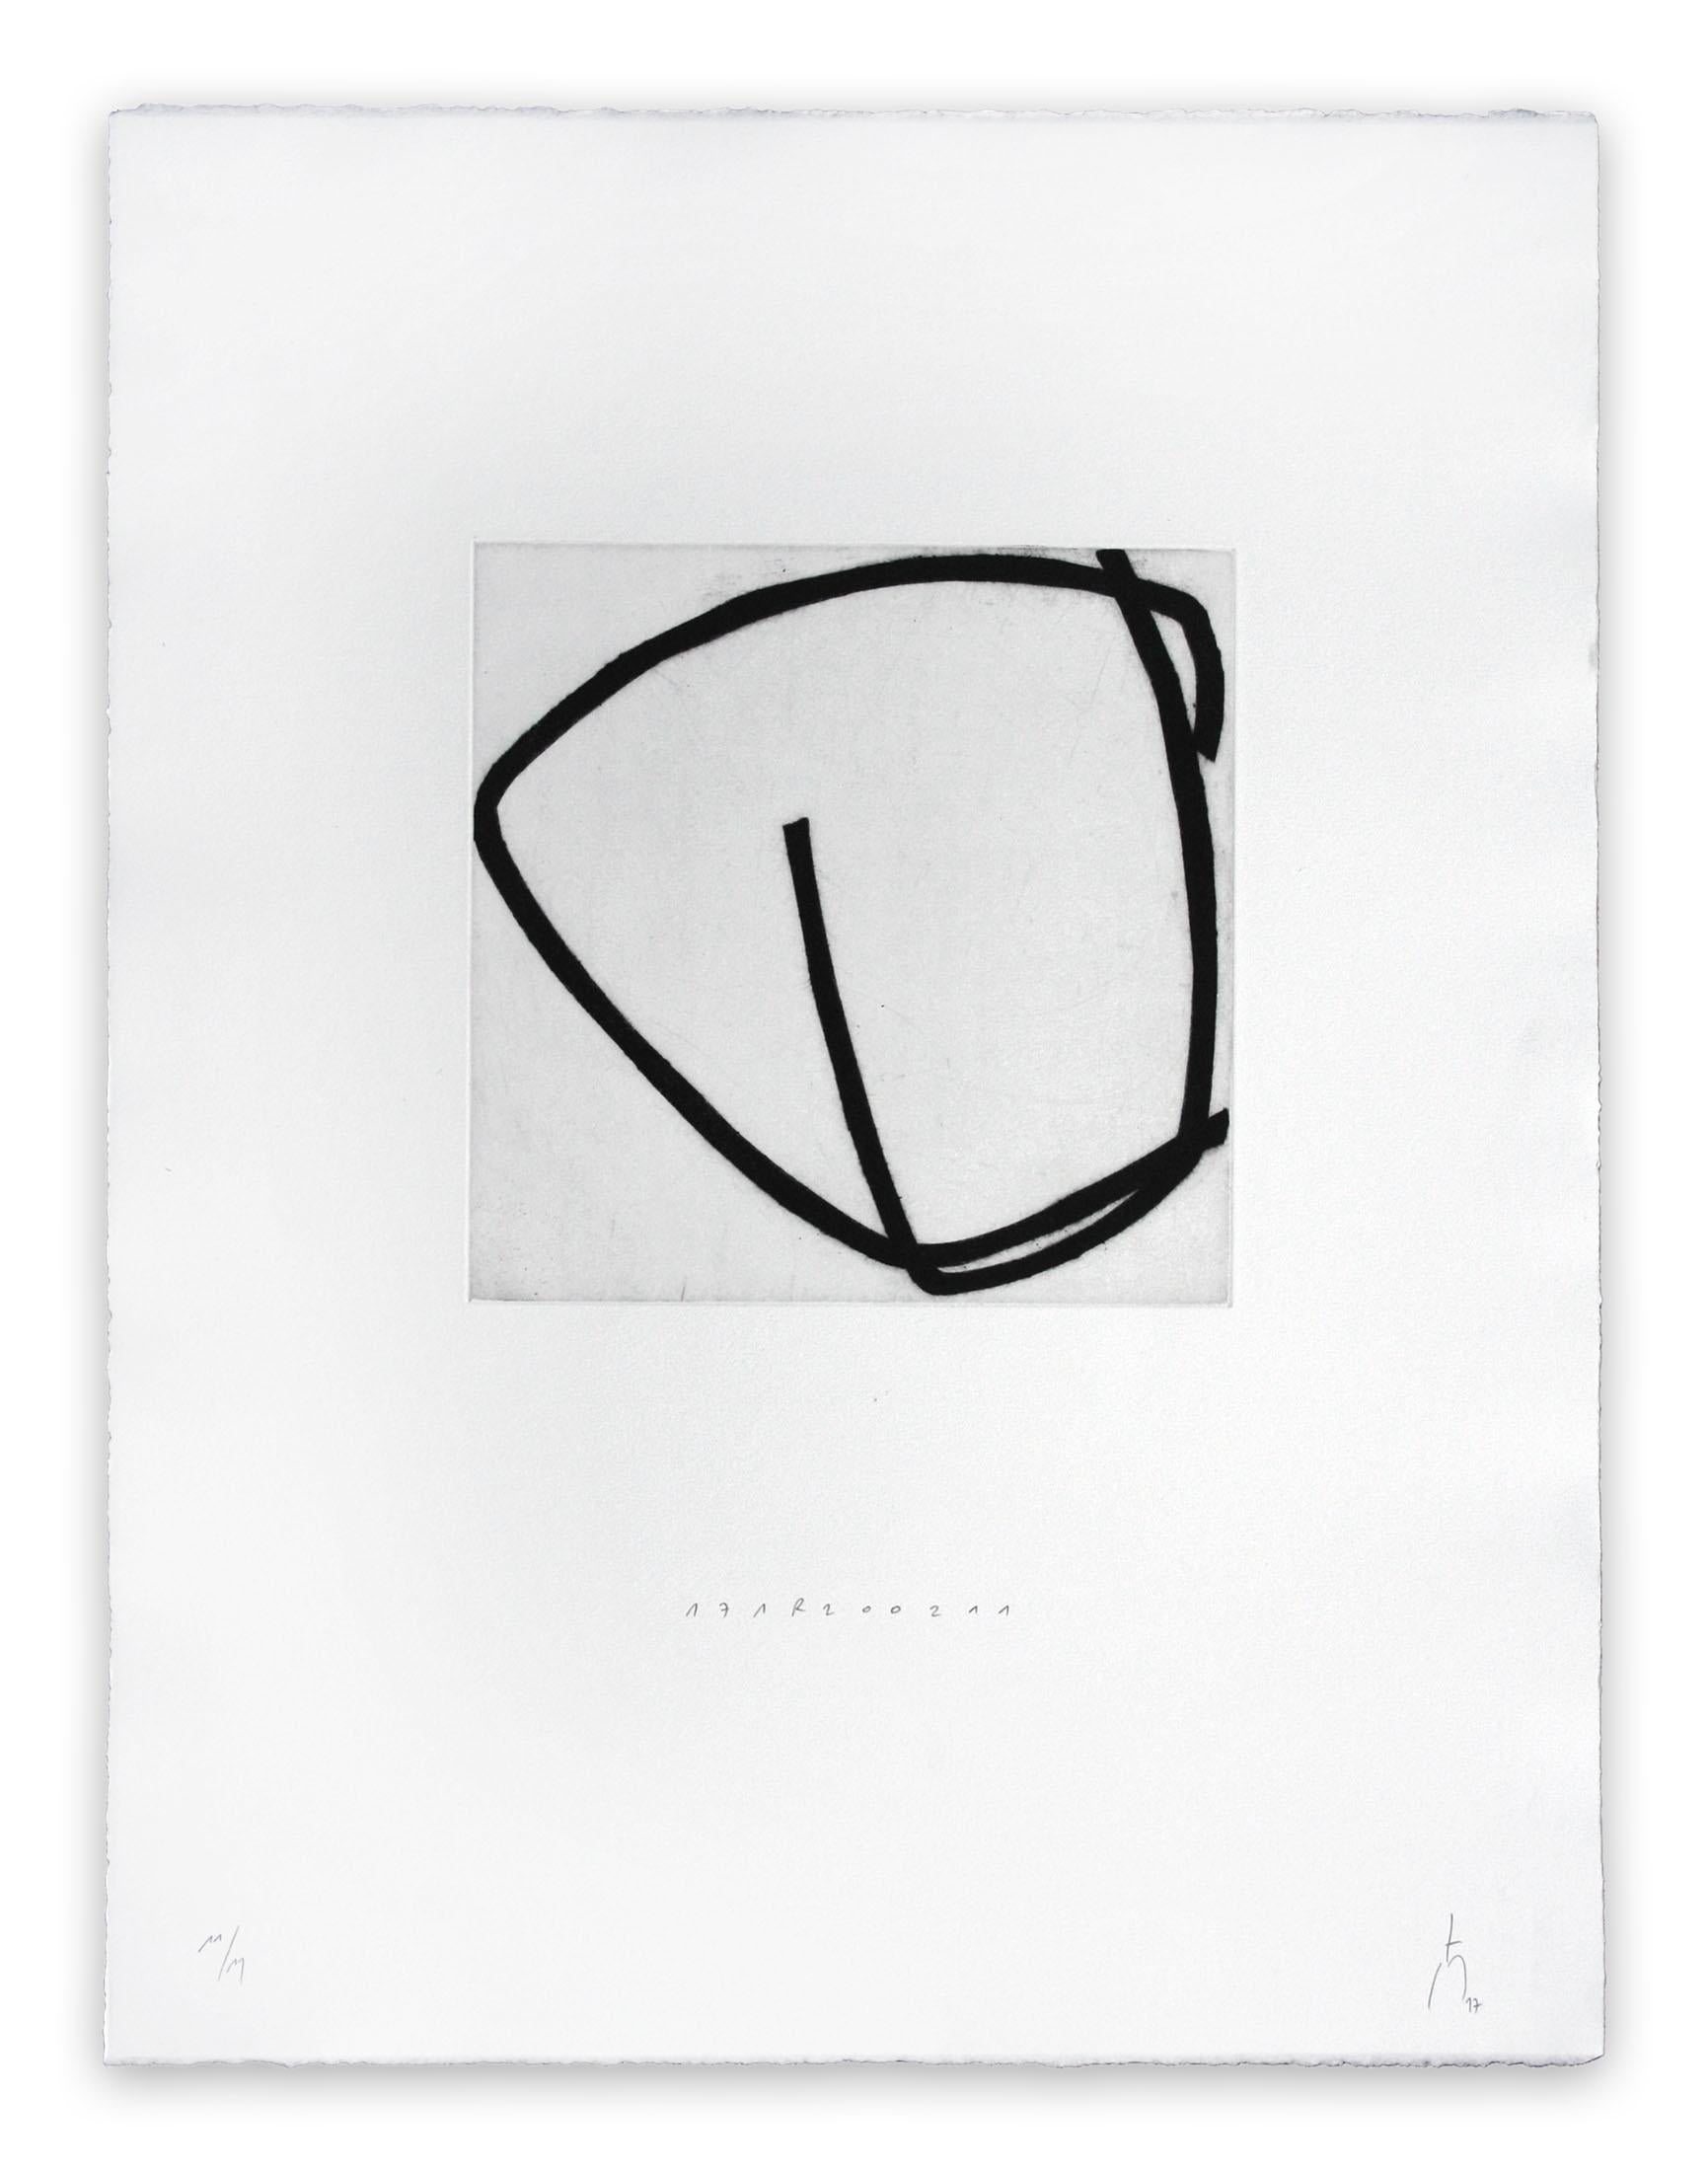 171R20021 - Print by Pierre Muckensturm